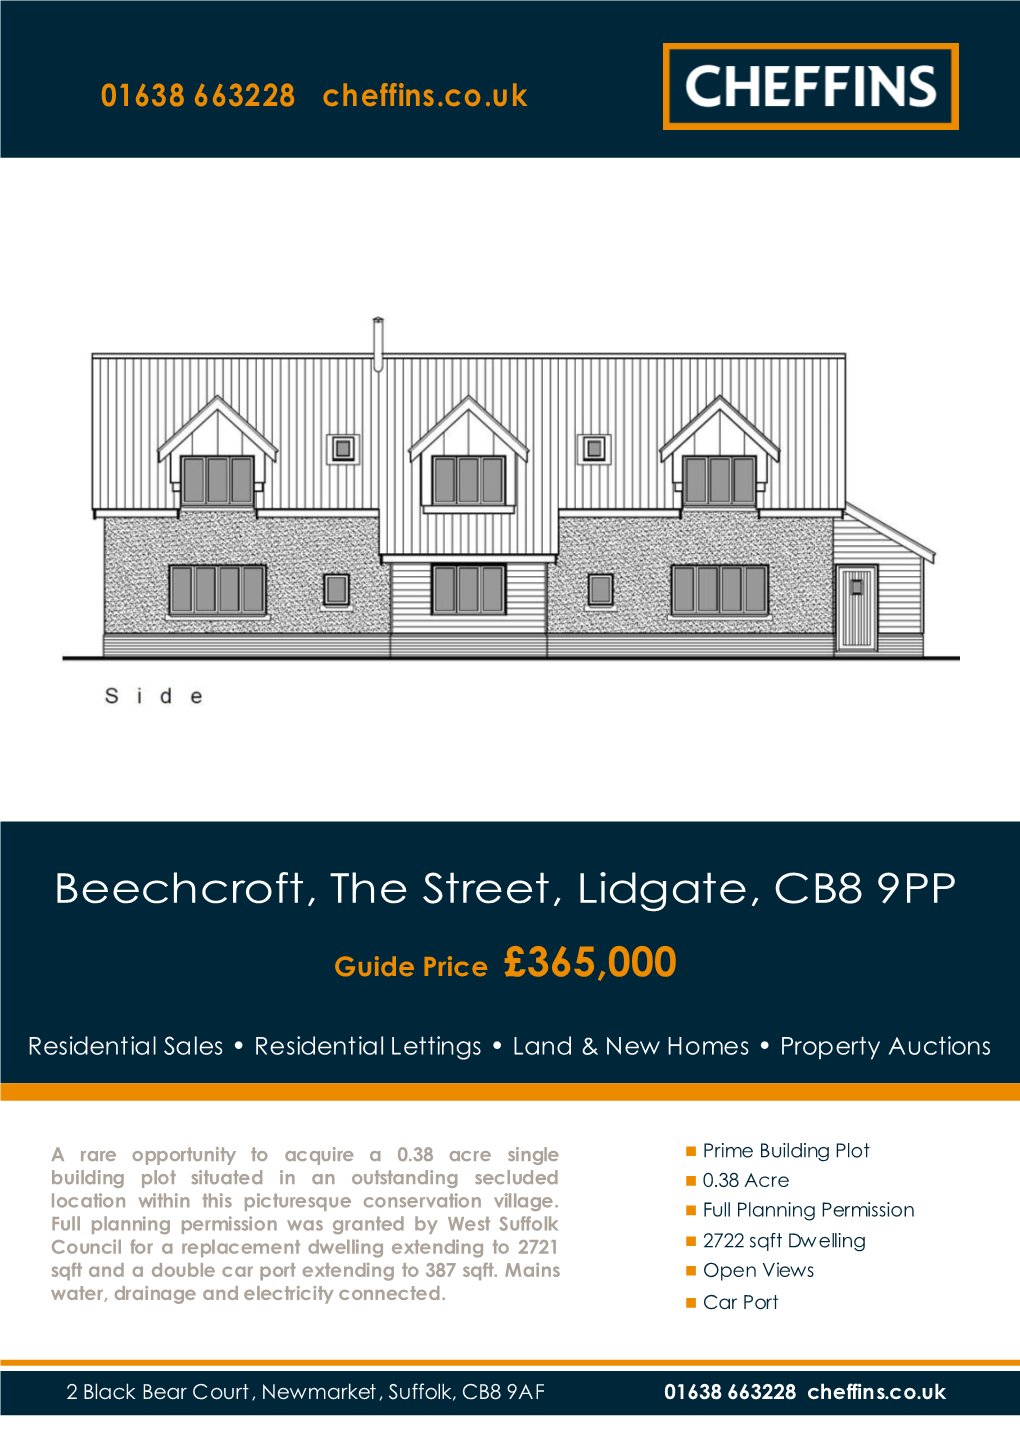 Beechcroft, the Street, Lidgate, CB8 9PP